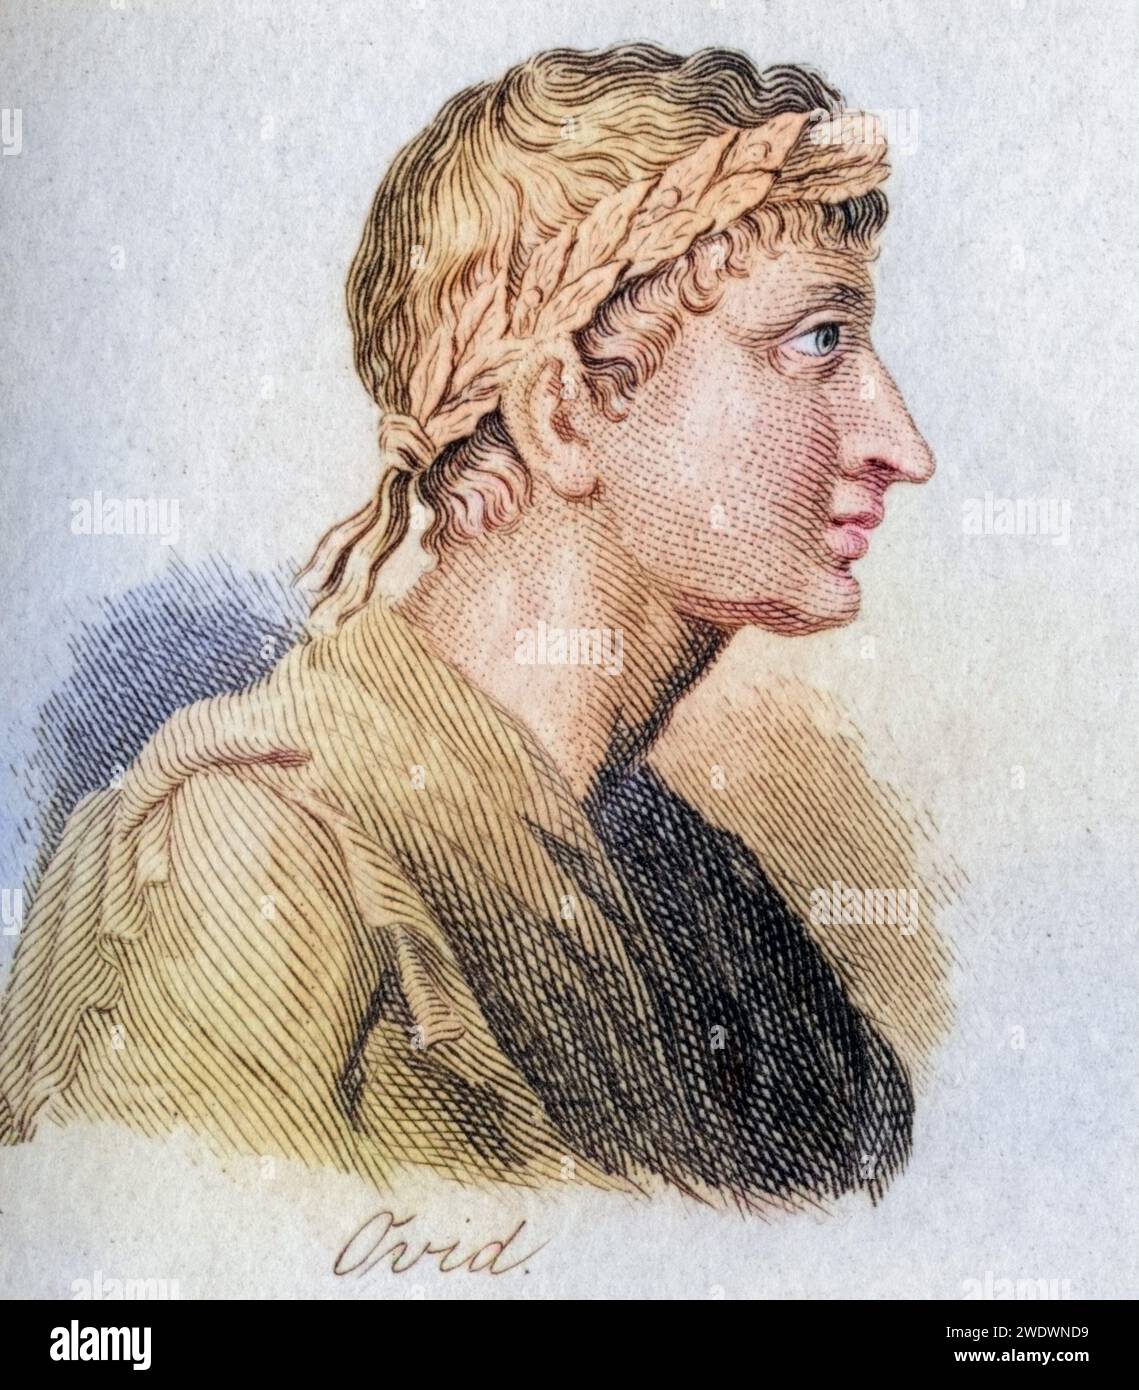 Ovidio, Publius Ovidius Naso, 43 v. Chr. - 17 n. Chr. Römischer Dichter, Historisch, digital restaurierte Reproduktion von einer Vorlage aus dem 19. Jahrhundert, Fecha de registro no indicada Foto de stock